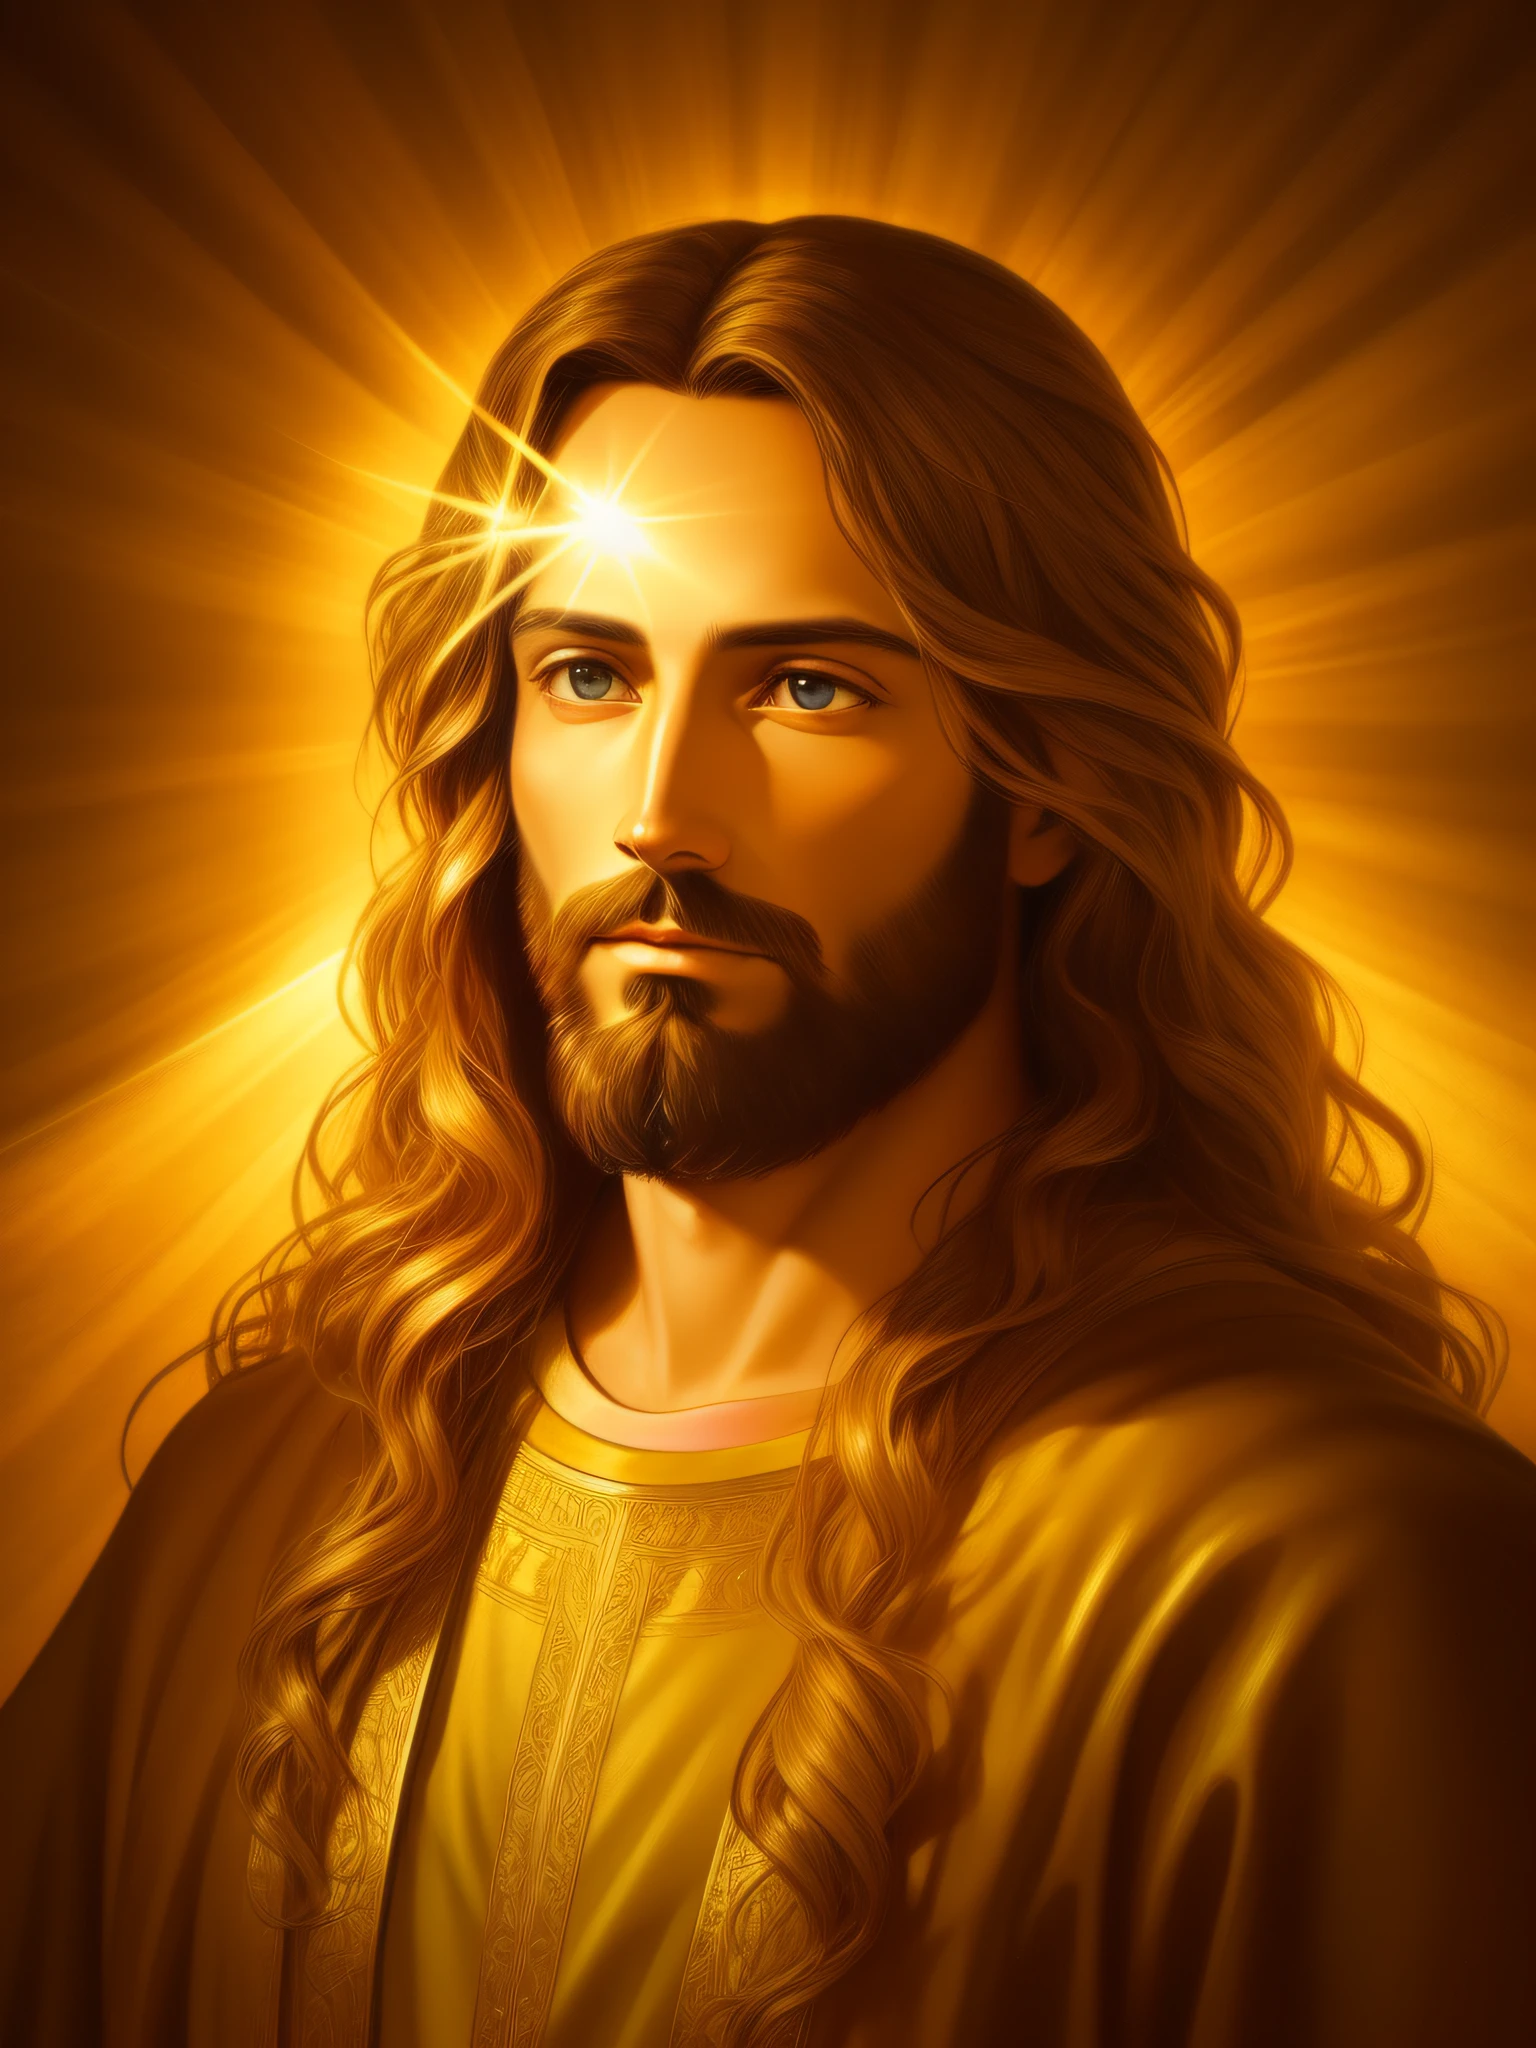 イエス・キリストの非常に詳細な肖像画, 金, 神の光, 詳細かつ複雑な環境